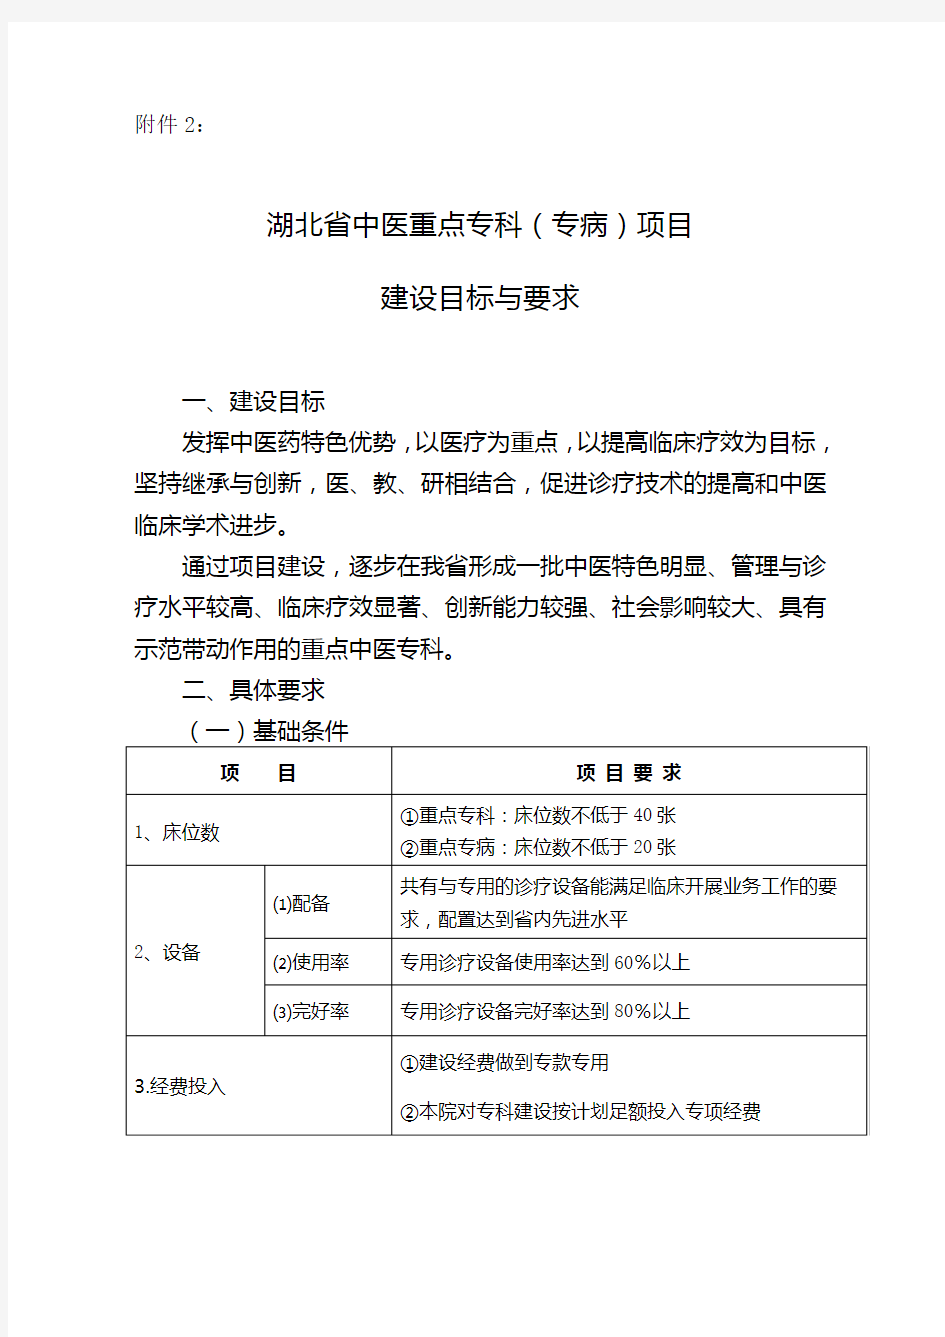 湖北省中医重点专科(专病)项目目标与要求